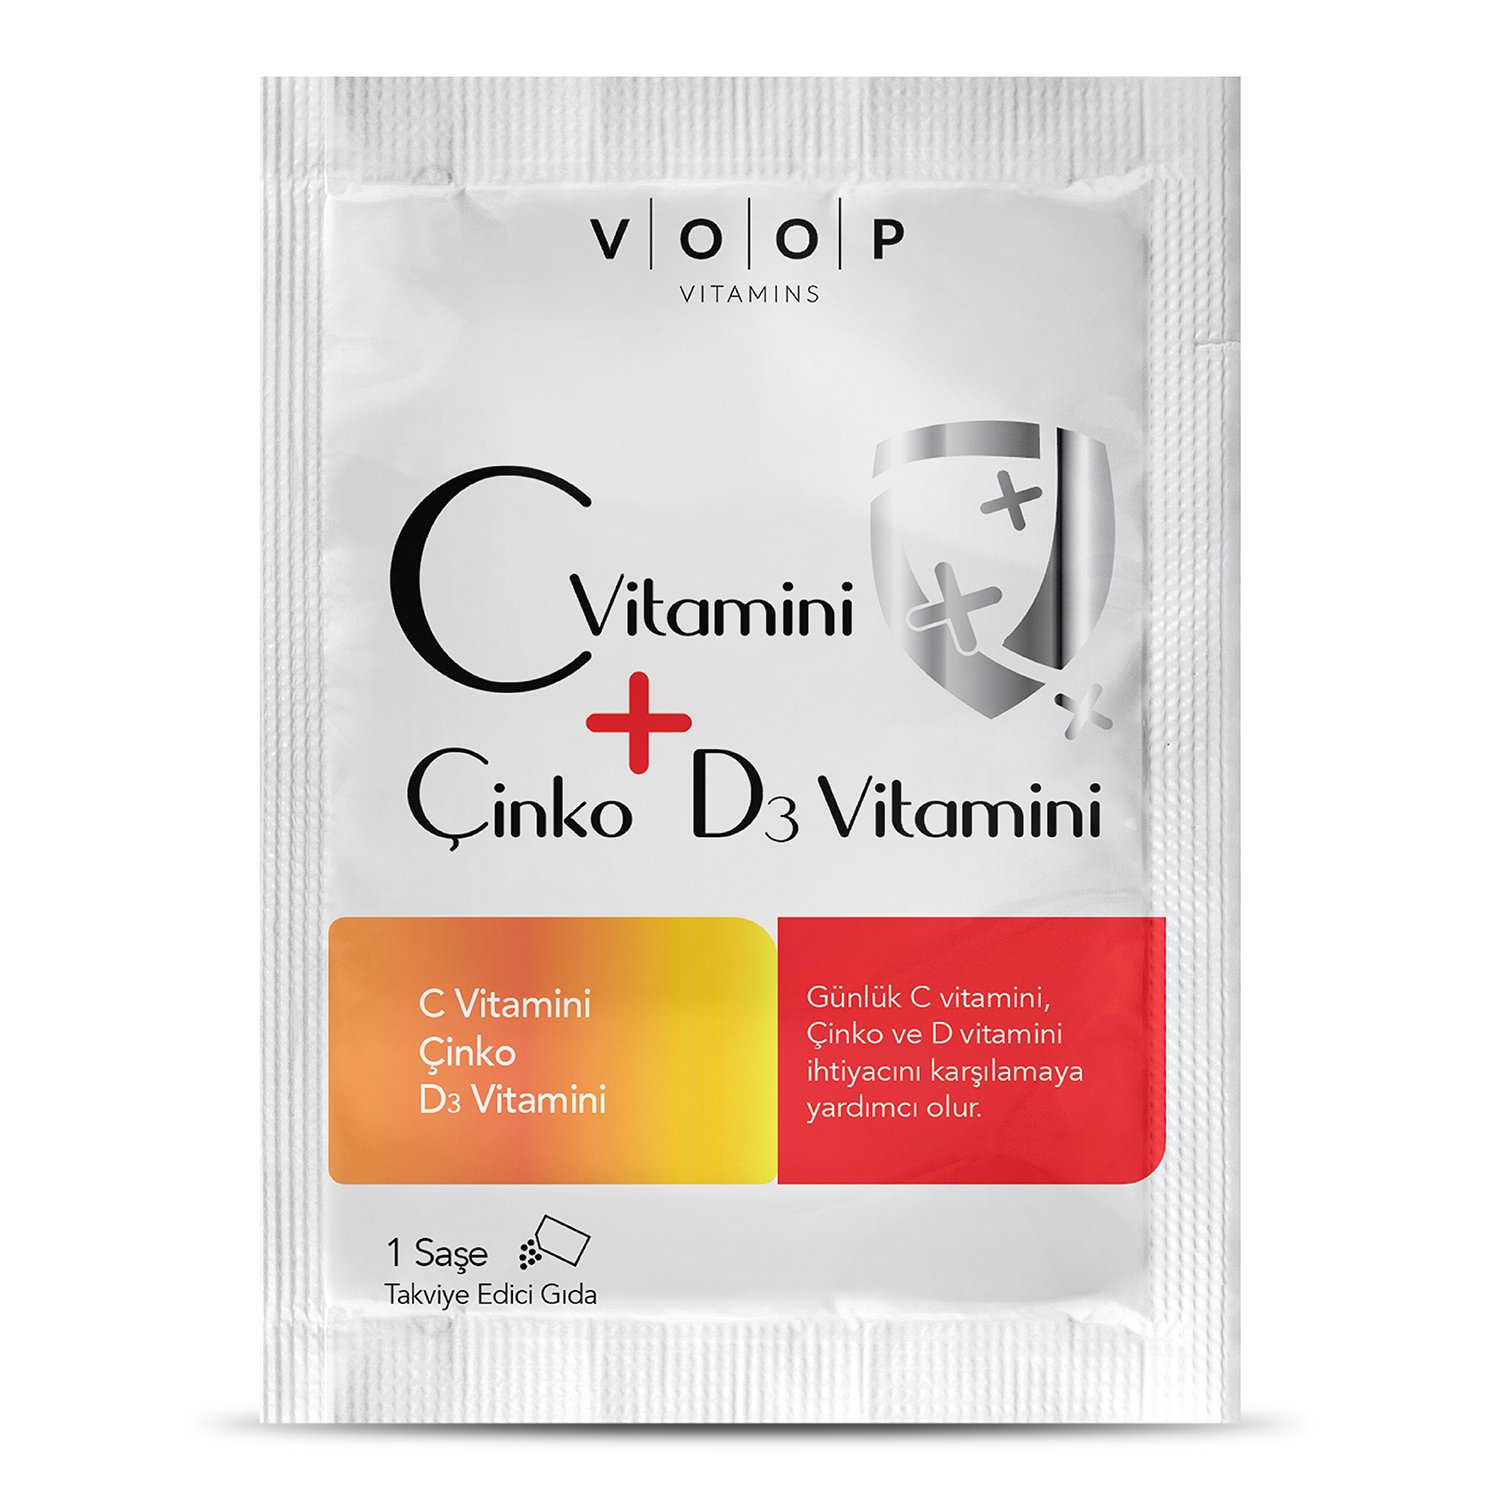 VOOP C Vitamini, D3 Vitamini ve Çinko 1 Saşe